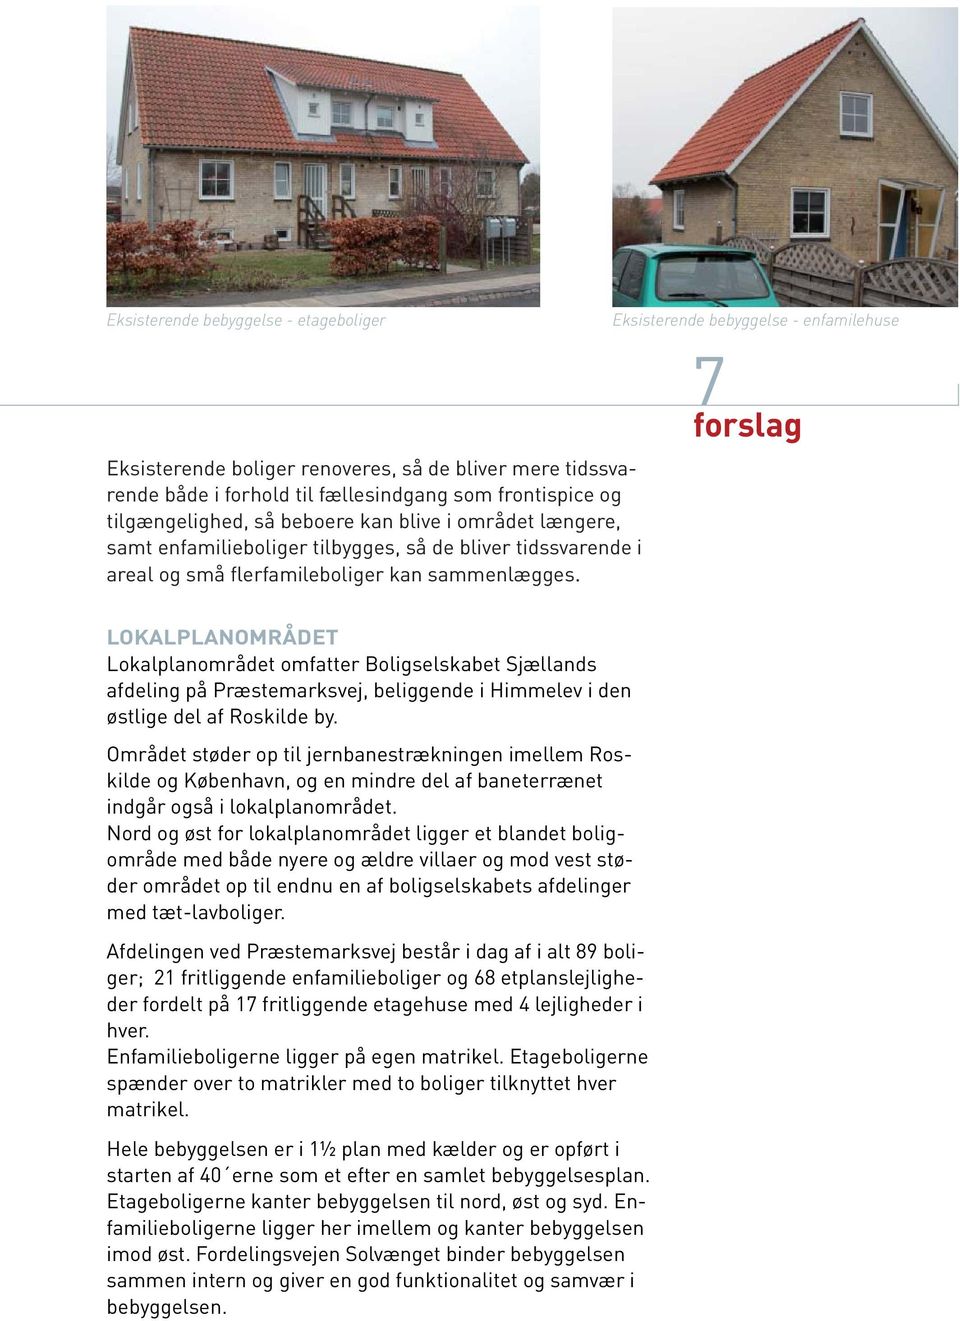 Eksisterende bebyggelse - enfamilehuse 7 LOKALPLANOMRÅDET Lokalplanområdet omfatter Boligselskabet Sjællands afdeling på Præstemarksvej, beliggende i Himmelev i den østlige del af Roskilde by.